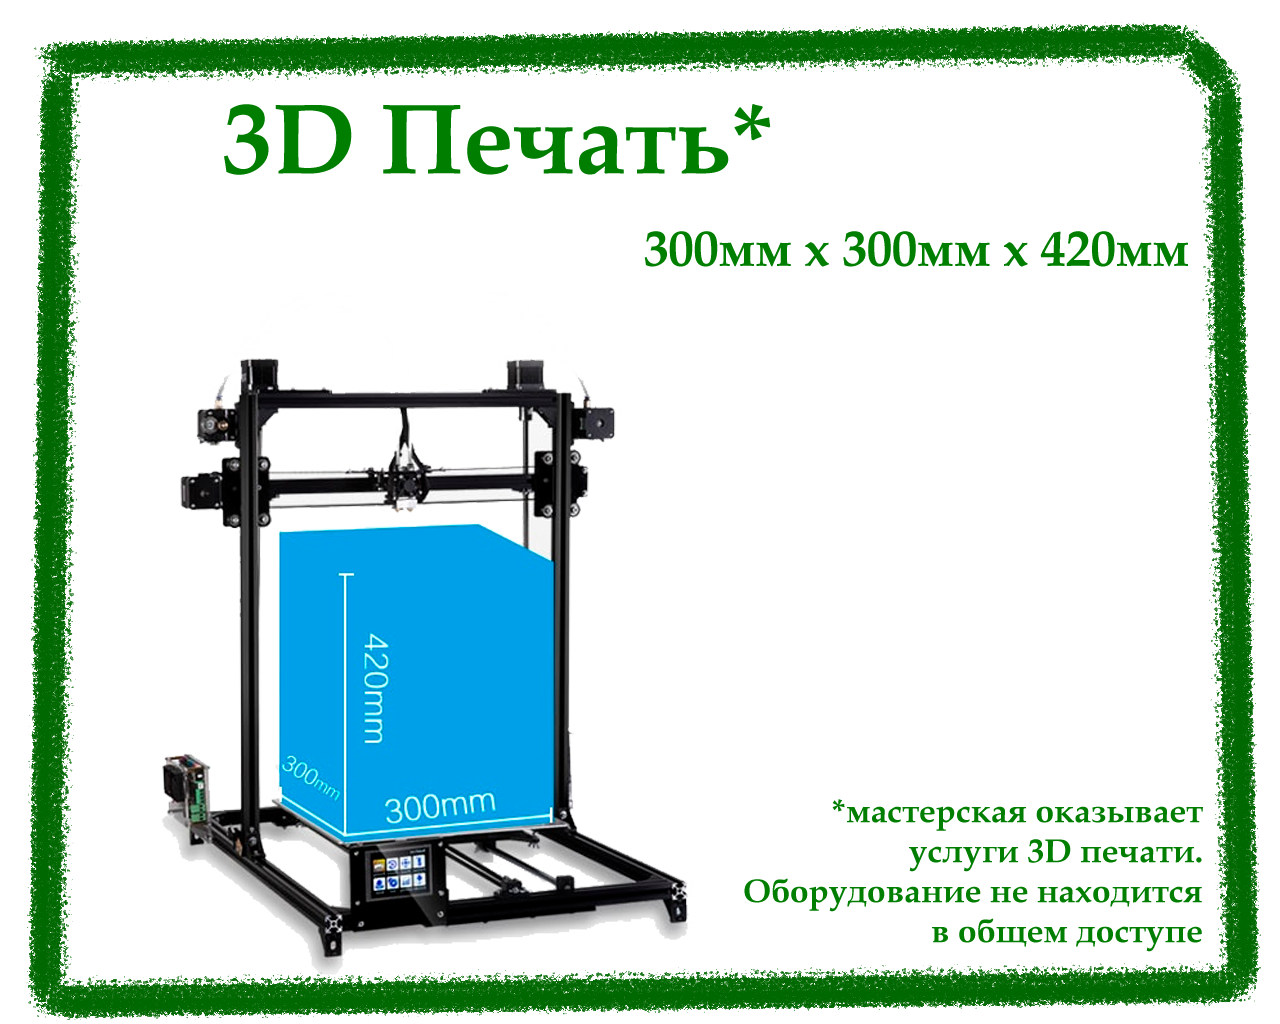 Услуги 3D печати, 3D печать на заказ, коворкинг, аренда мастерской, мастерская 3D печать